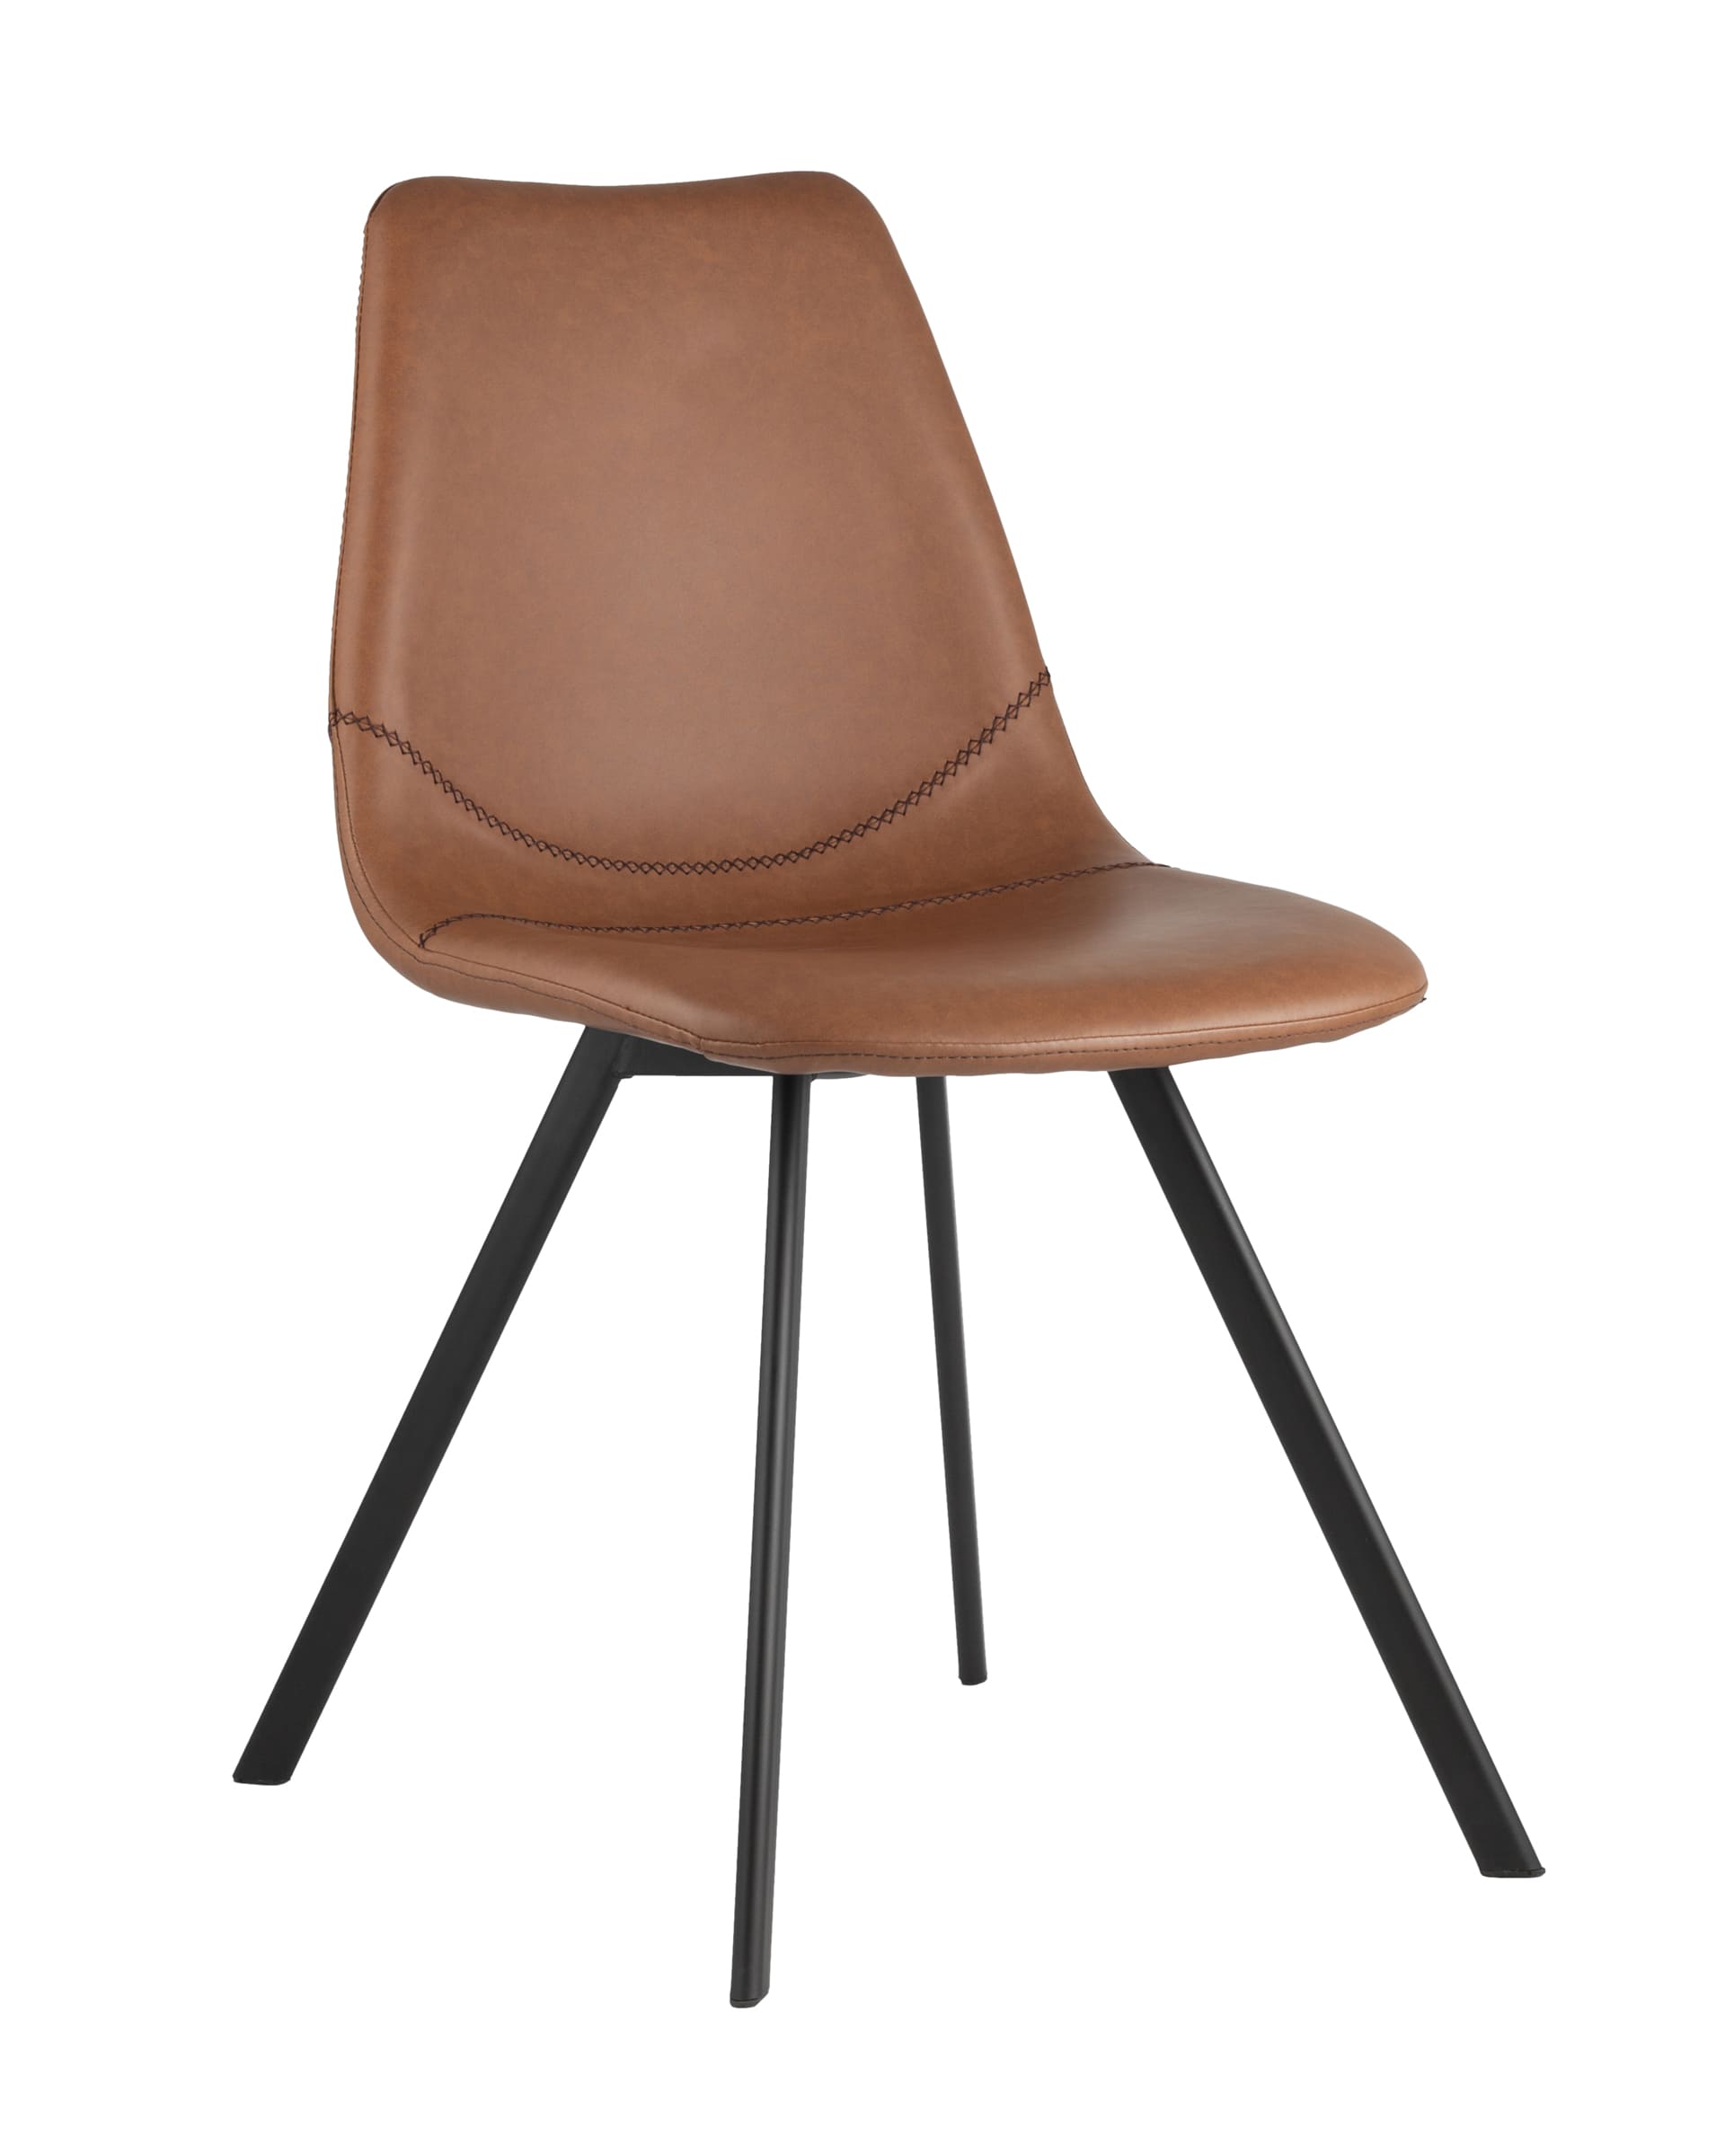 Stool Group Саксон коричневый, удобное сиденье, металлические ножки